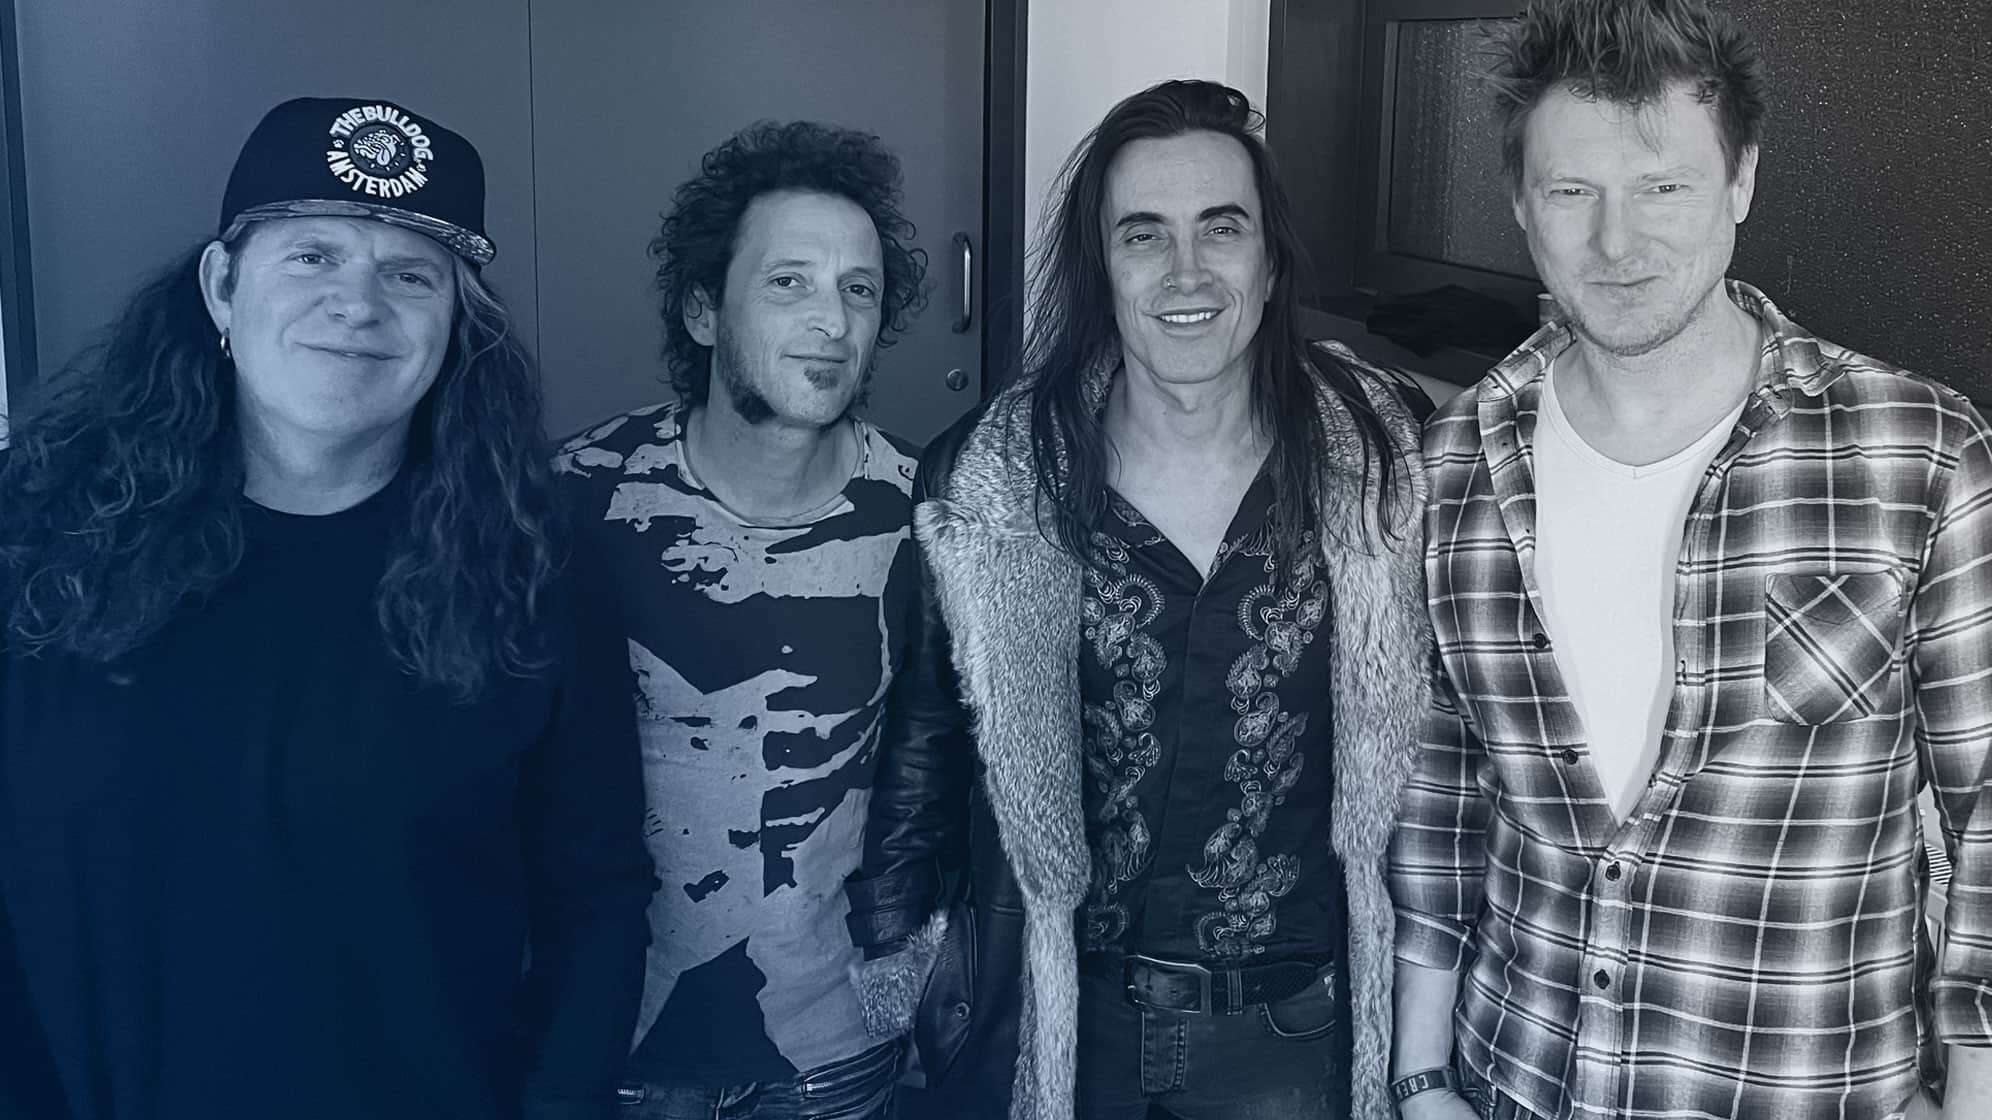 Gruppenfoto von den Bandmitgliedern von Extreme gemeinsam mit ROCK ANTENNE Musikchef Thomas "Metal" Moser nach dem Interview beim Rock Out Festival 2023 in Augsburg